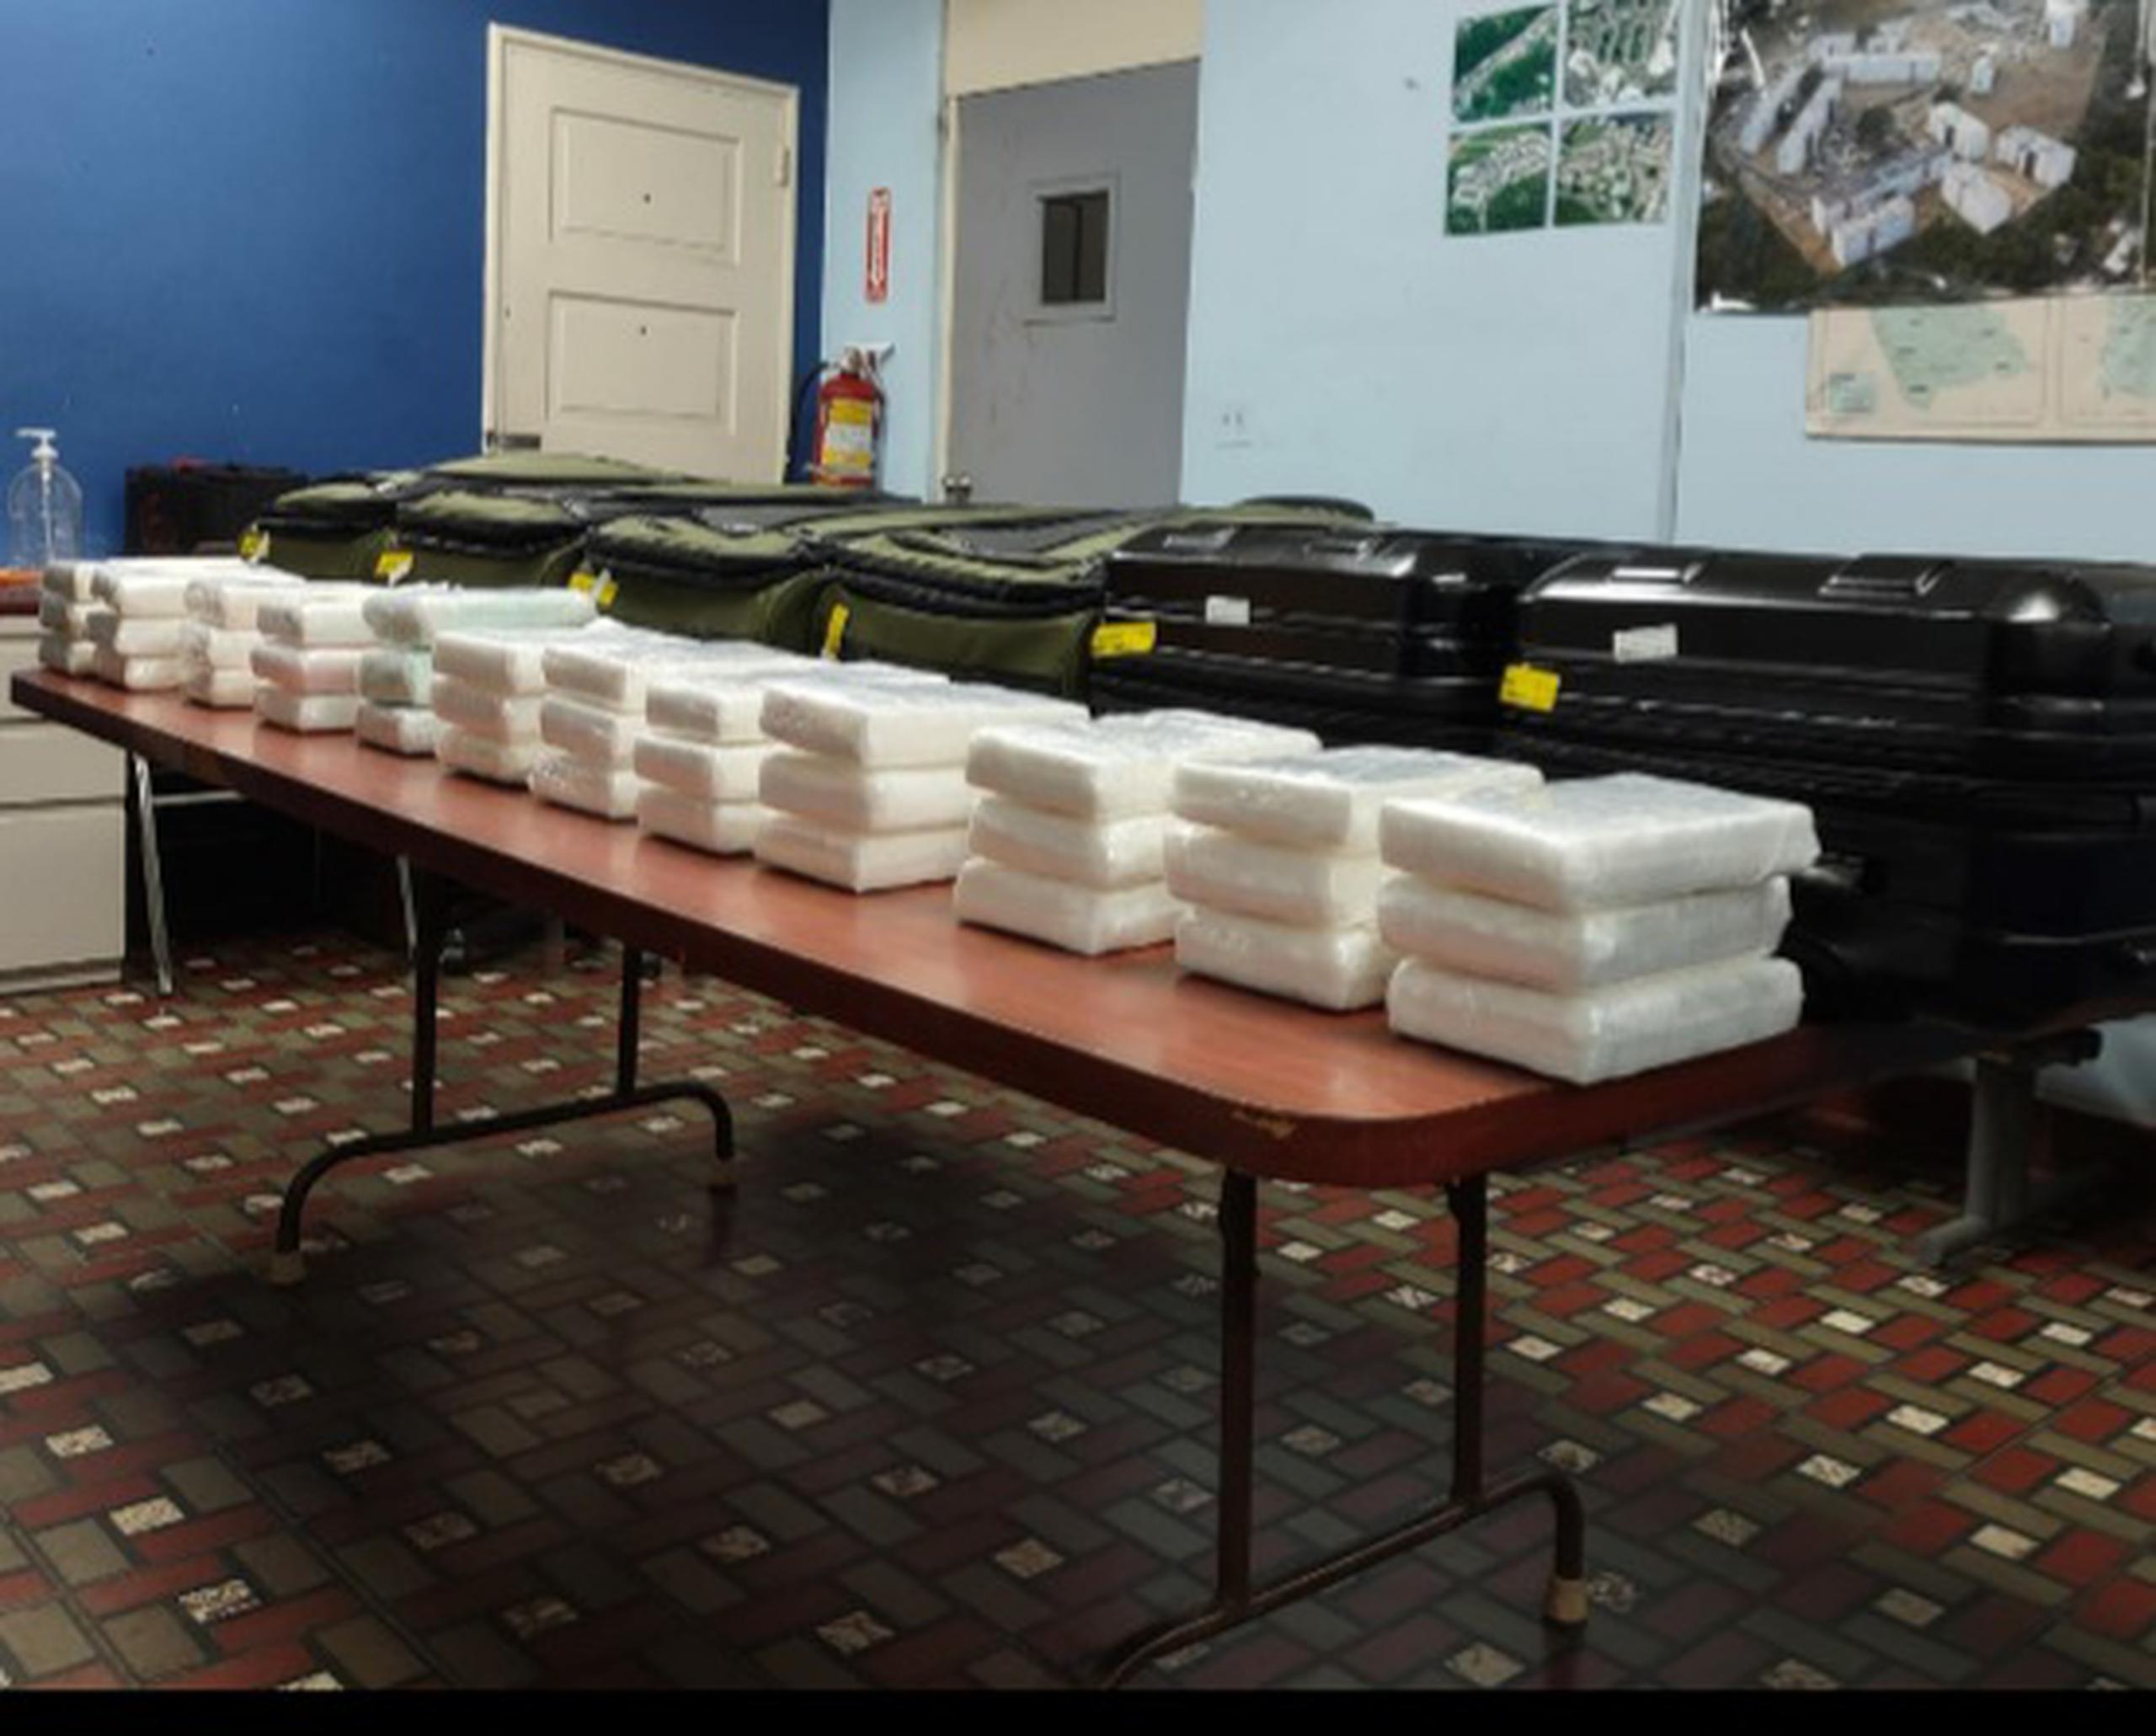 Los 36 kilos de cocaína eran transportados en maletas por tres mujeres mientras se disponían a abordar un vuelo con destino a Boston.